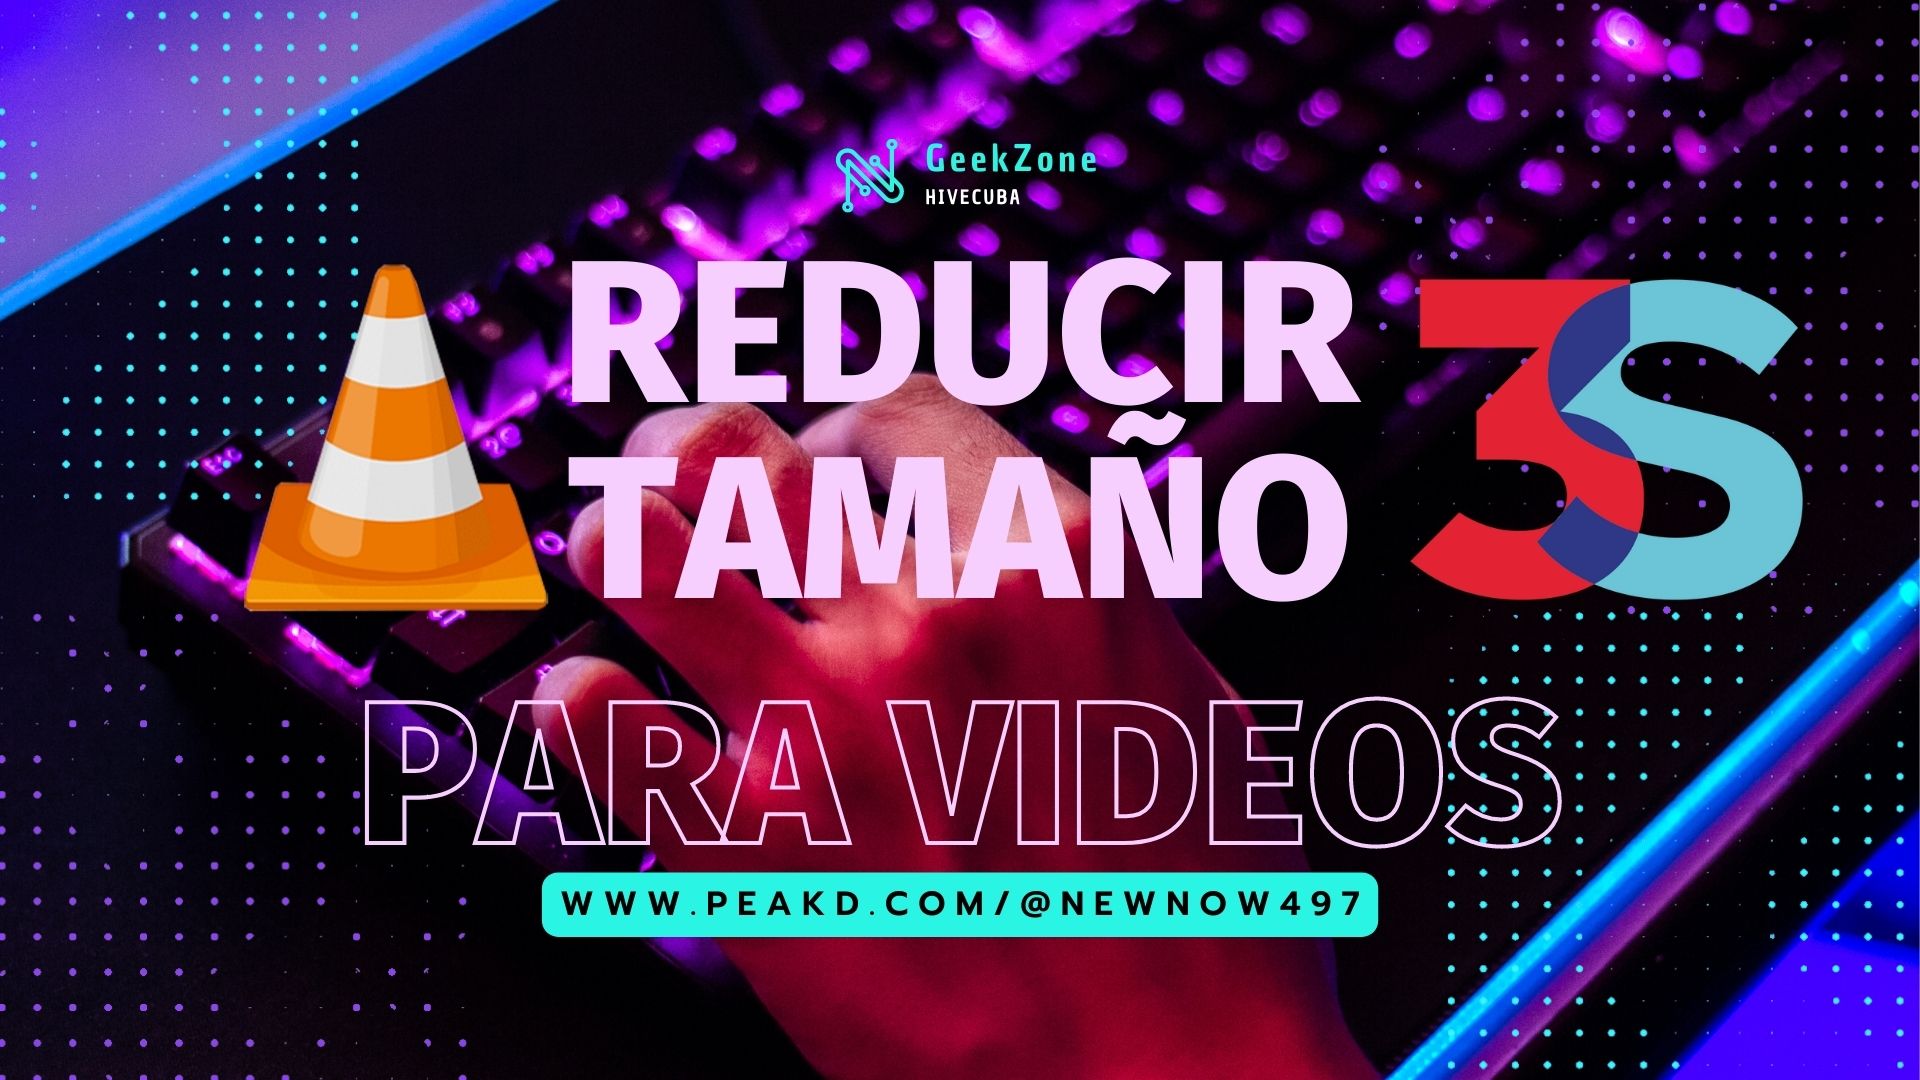 Negro Rosa Claro y Cian Neón Ciencia Ficción Tecnología Promocional Video.jpg